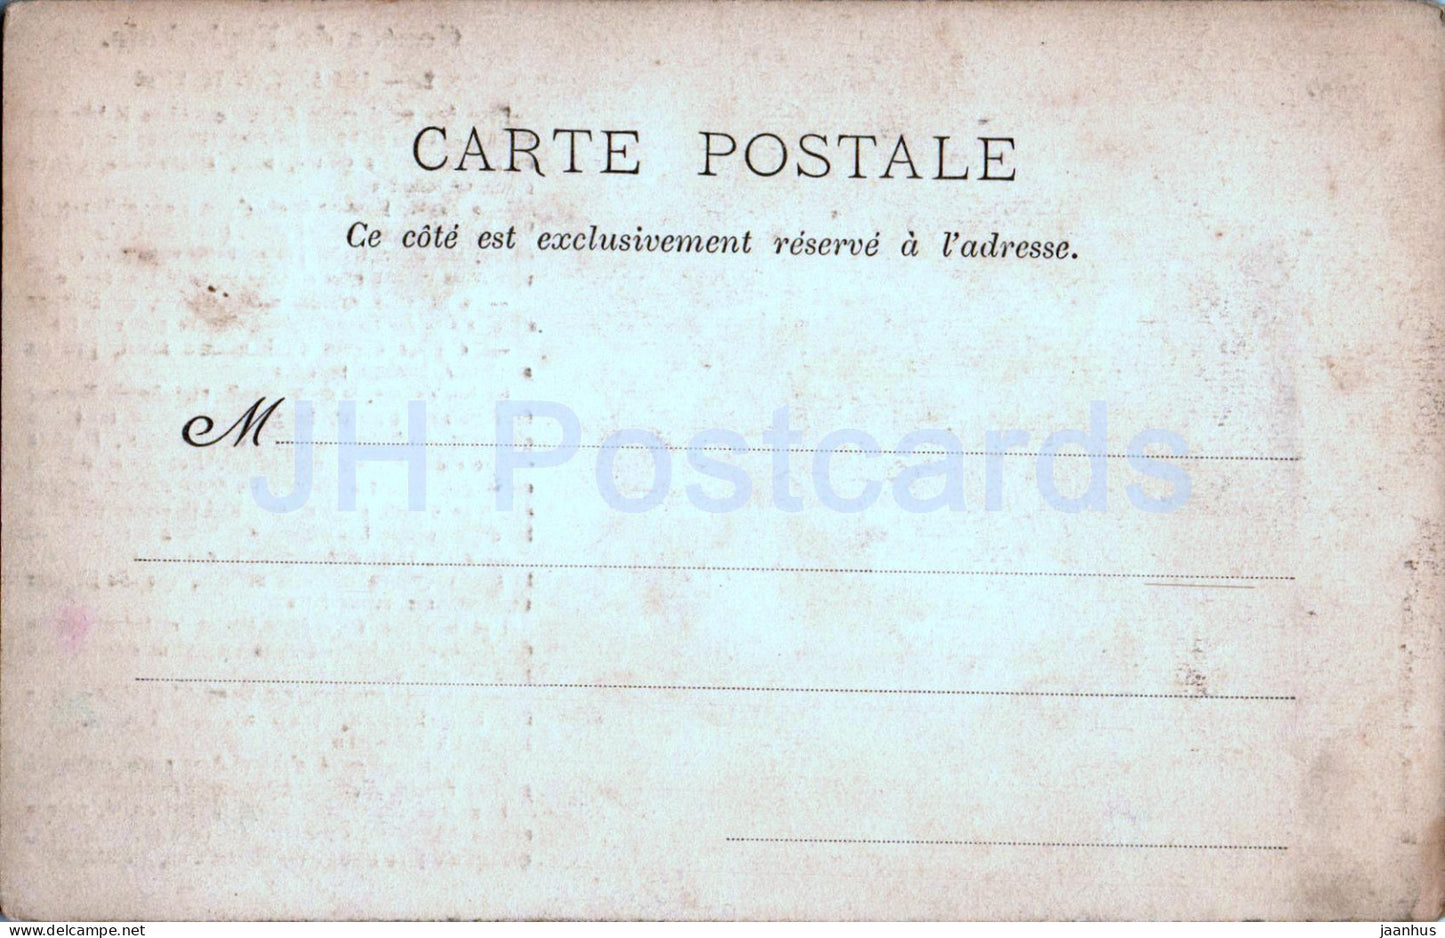 Contes de Fraimbois - Les Apotres Voleurs - 2 - alte Postkarte - Frankreich - unbenutzt 